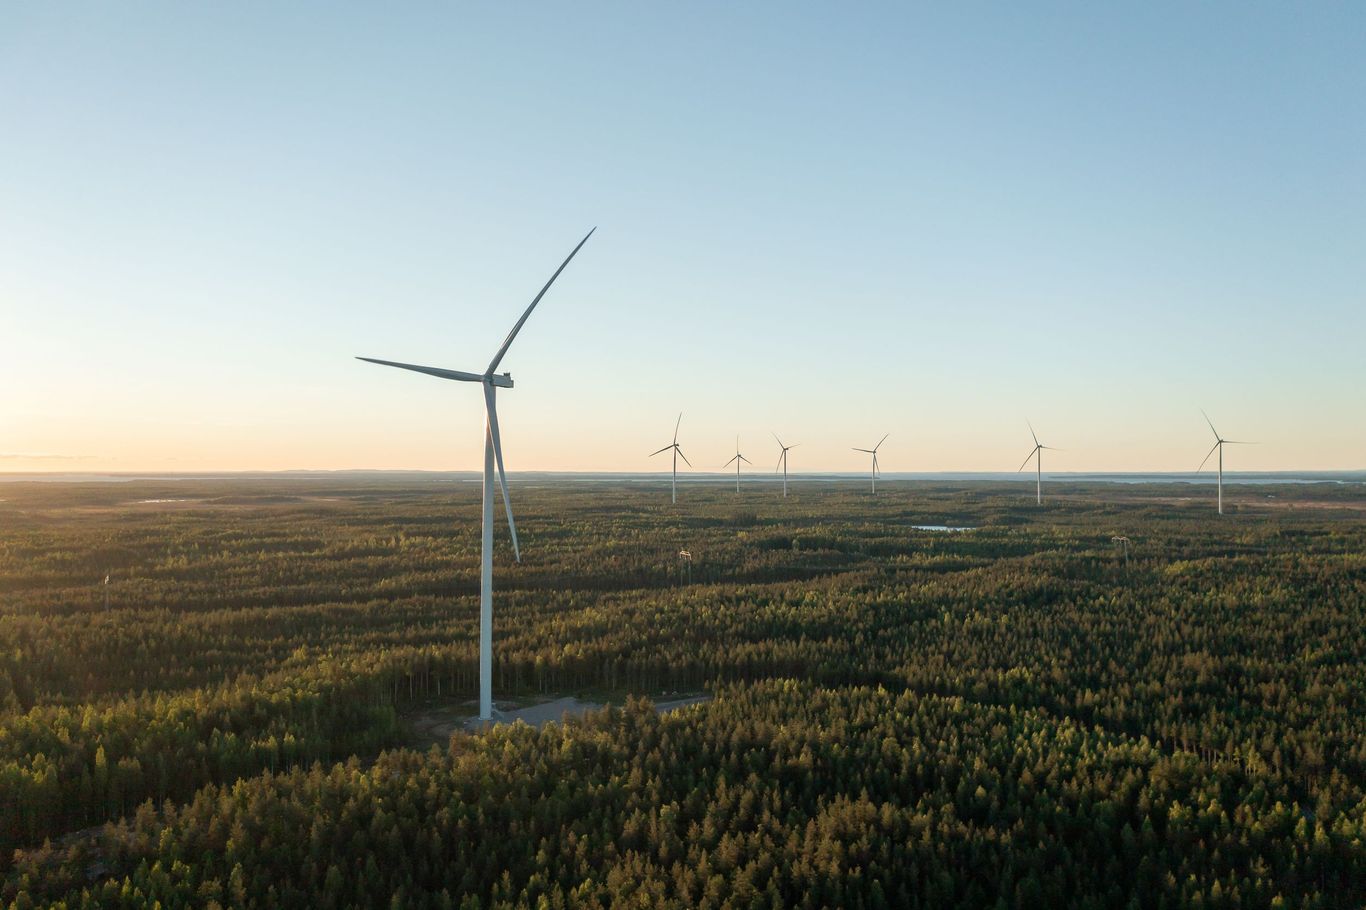 Metsälamminkangas vindpark, 132 MW, Finland (foto: Petteri Löppönen)